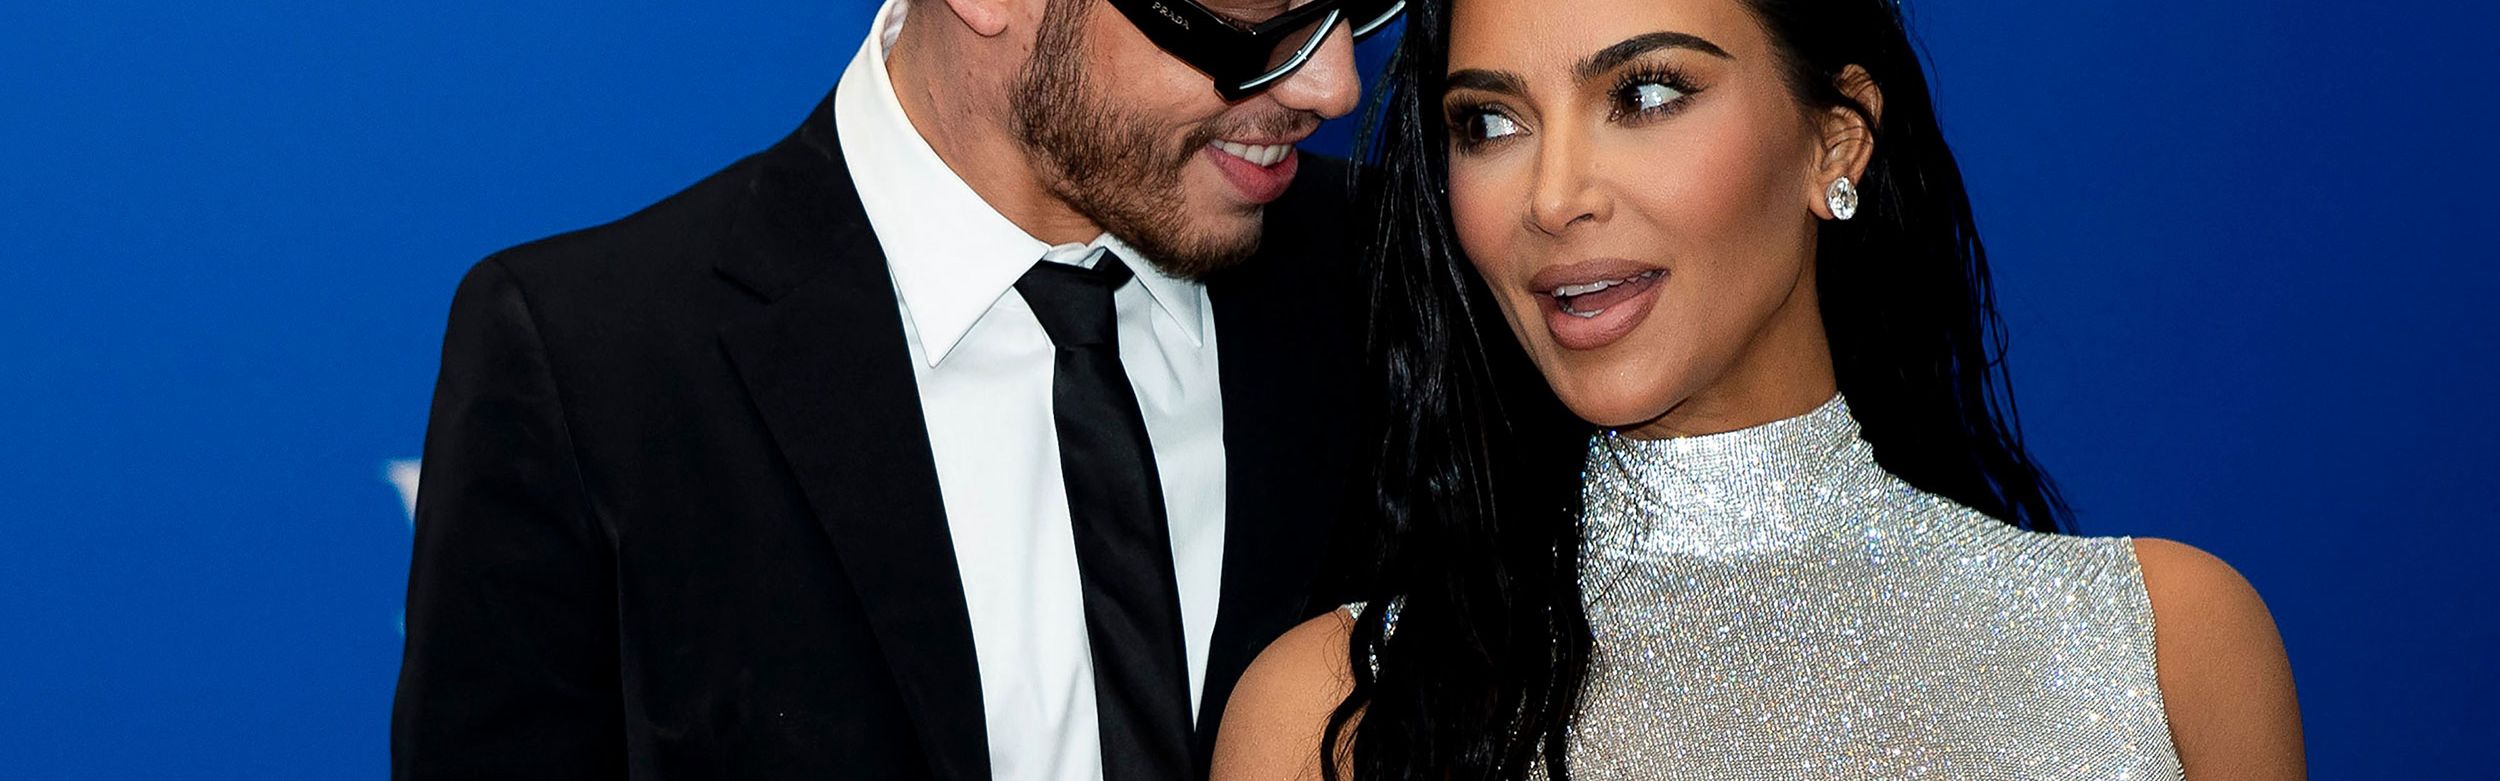 Kim Kardashian and Pete Davidson made their red carpet debut | CNN